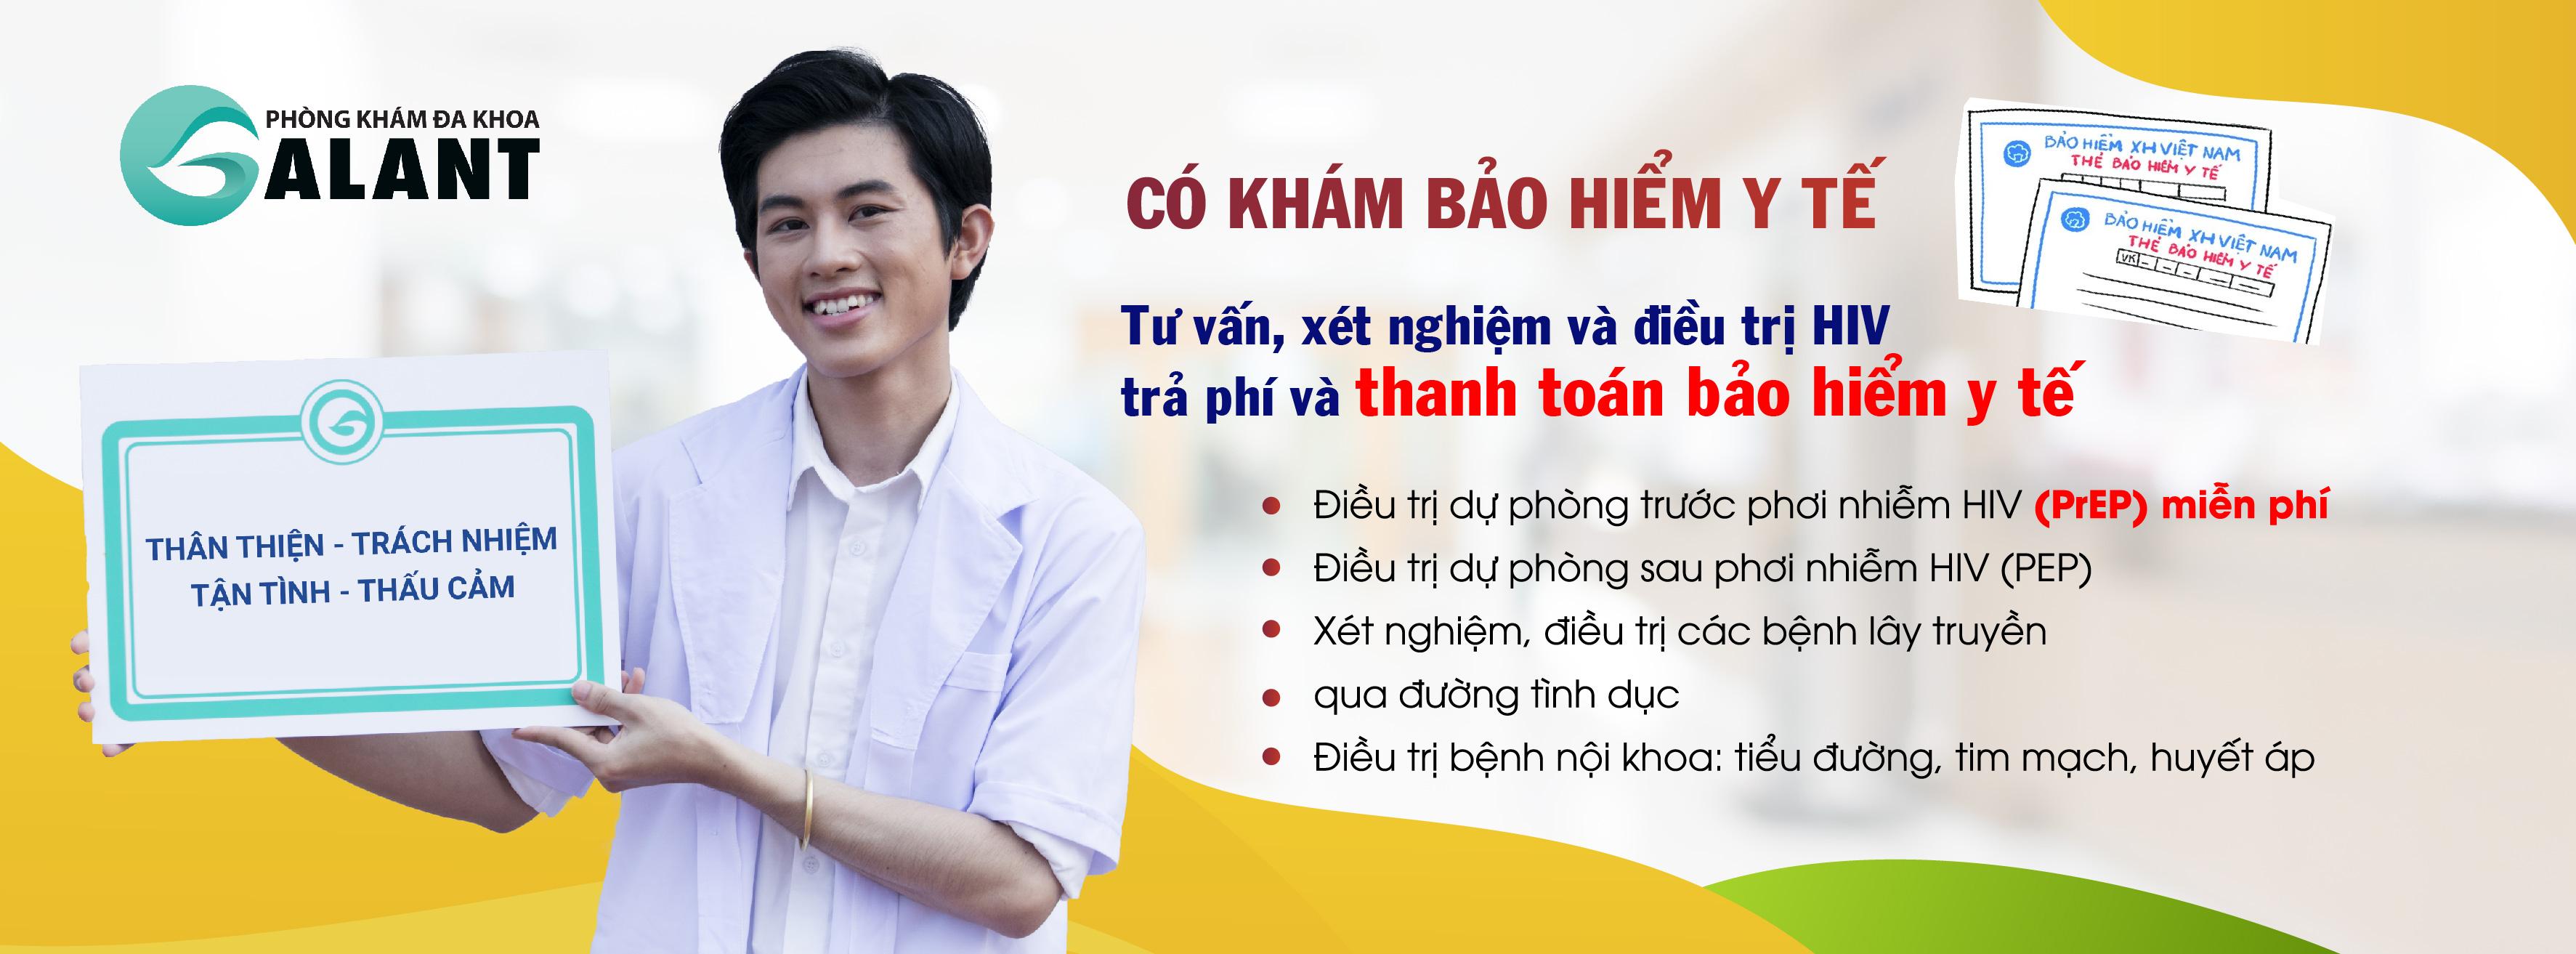 BAO LÂU XÉT NGHIỆM HIV CHÍNH XÁC? - Galant Clinic - Phòng khám cộng đồng  cho người yếu thế tại Việt Nam